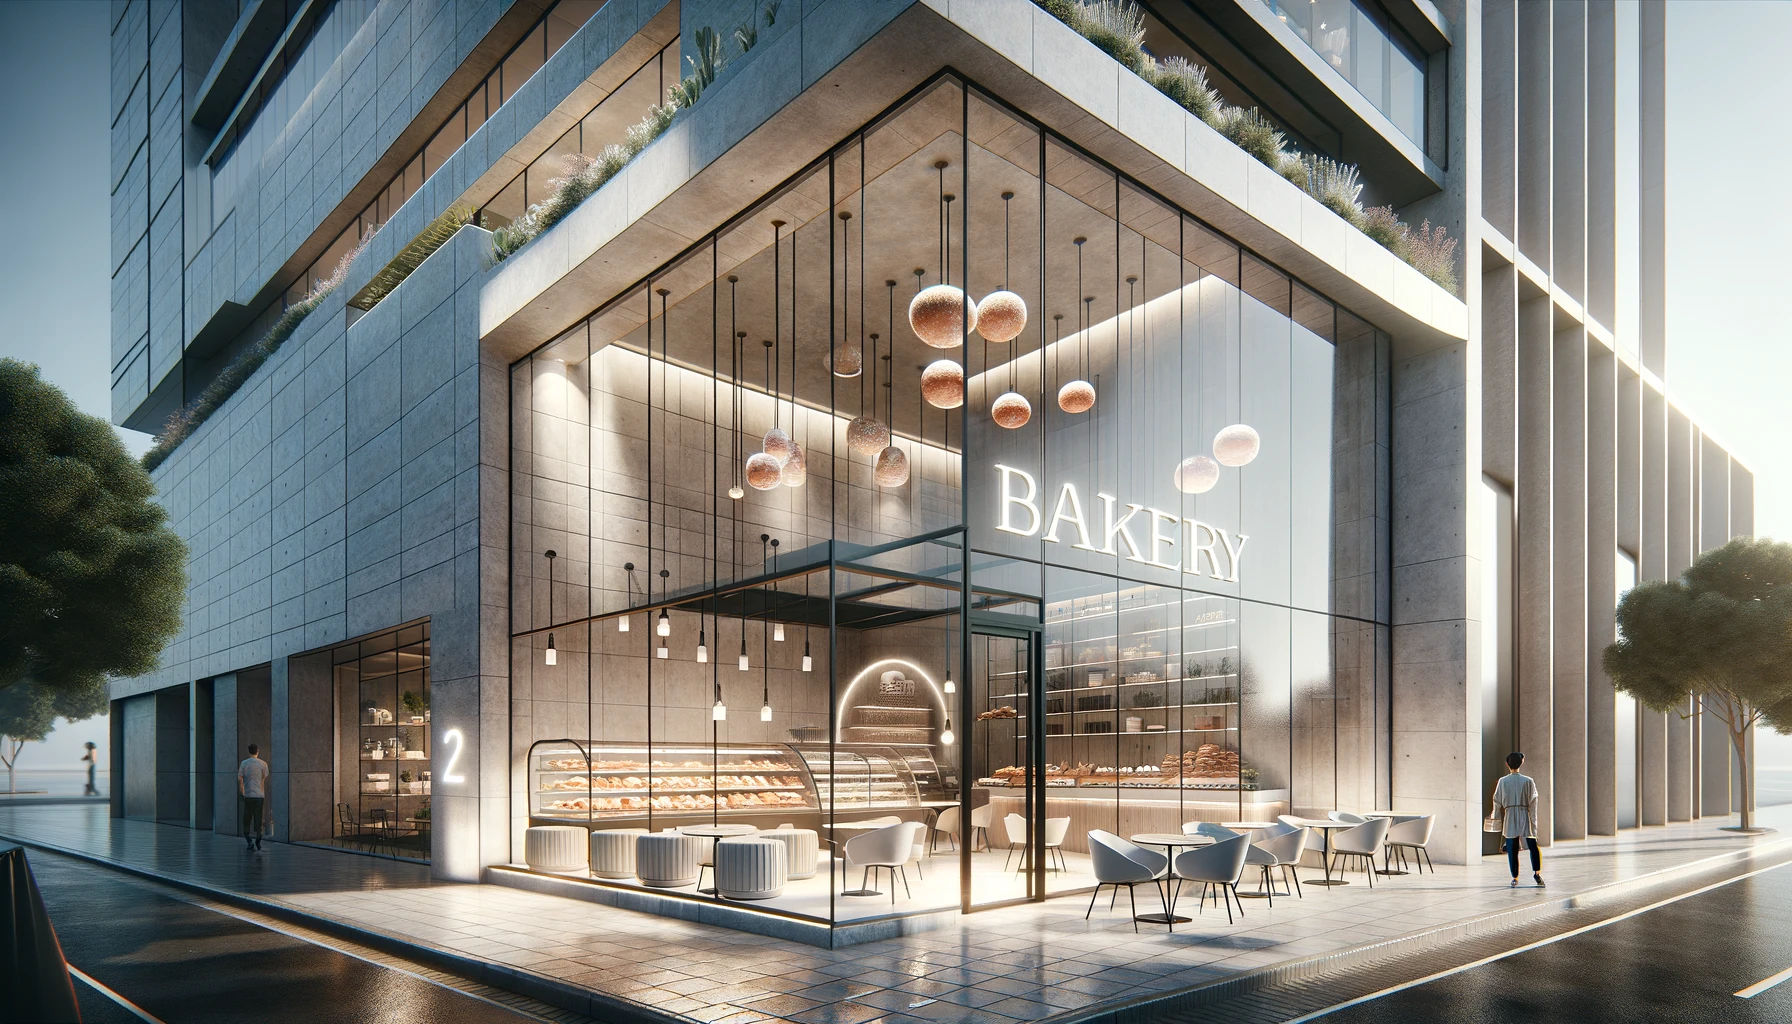 modern bakery shop front design ideas